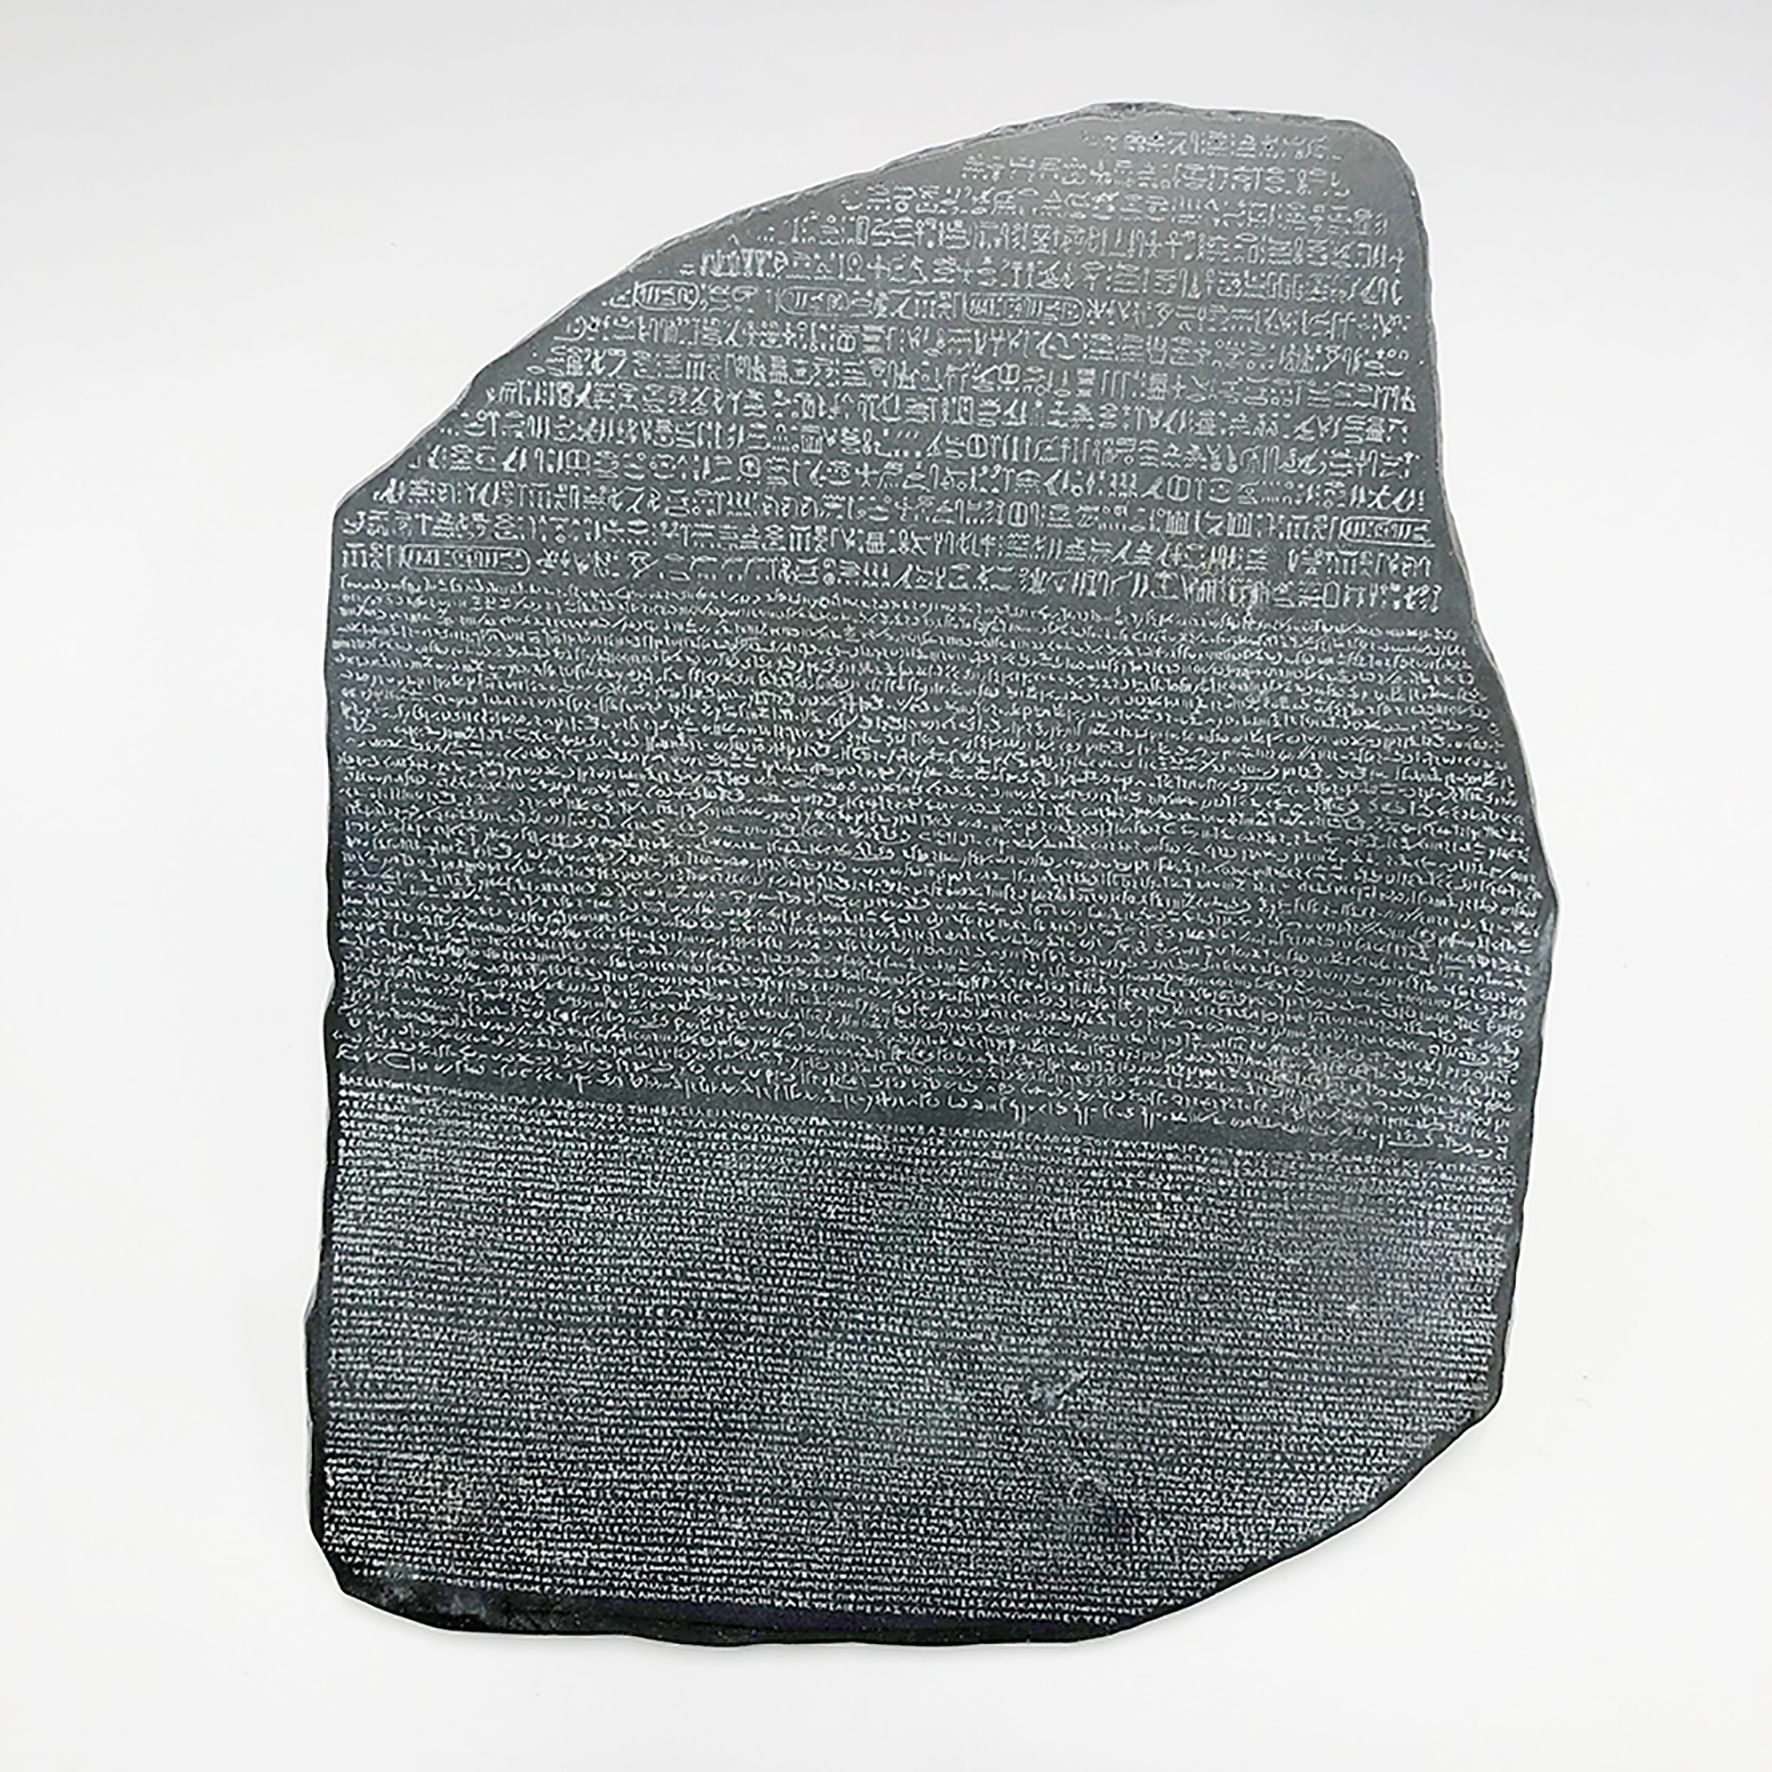 Replica Rosetta Stone